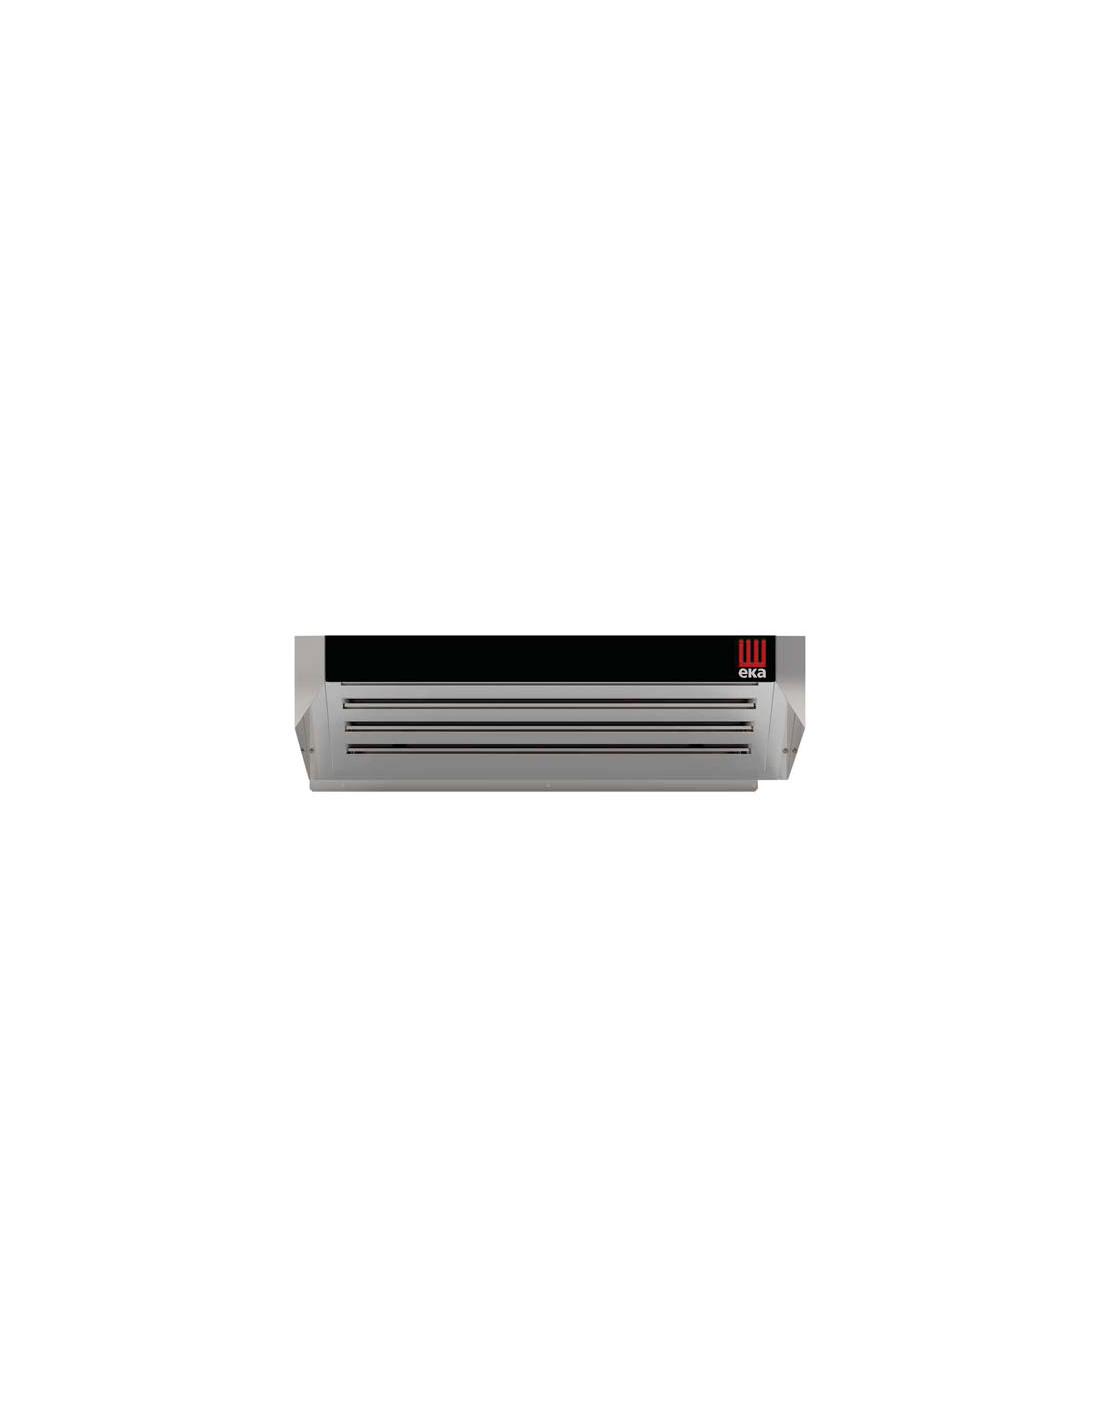 Capota condensadora - Para hornos 4 bandejas con vapor - Potencia monofásica 230V - cm 78,4 x 90,7 x 25,5 h